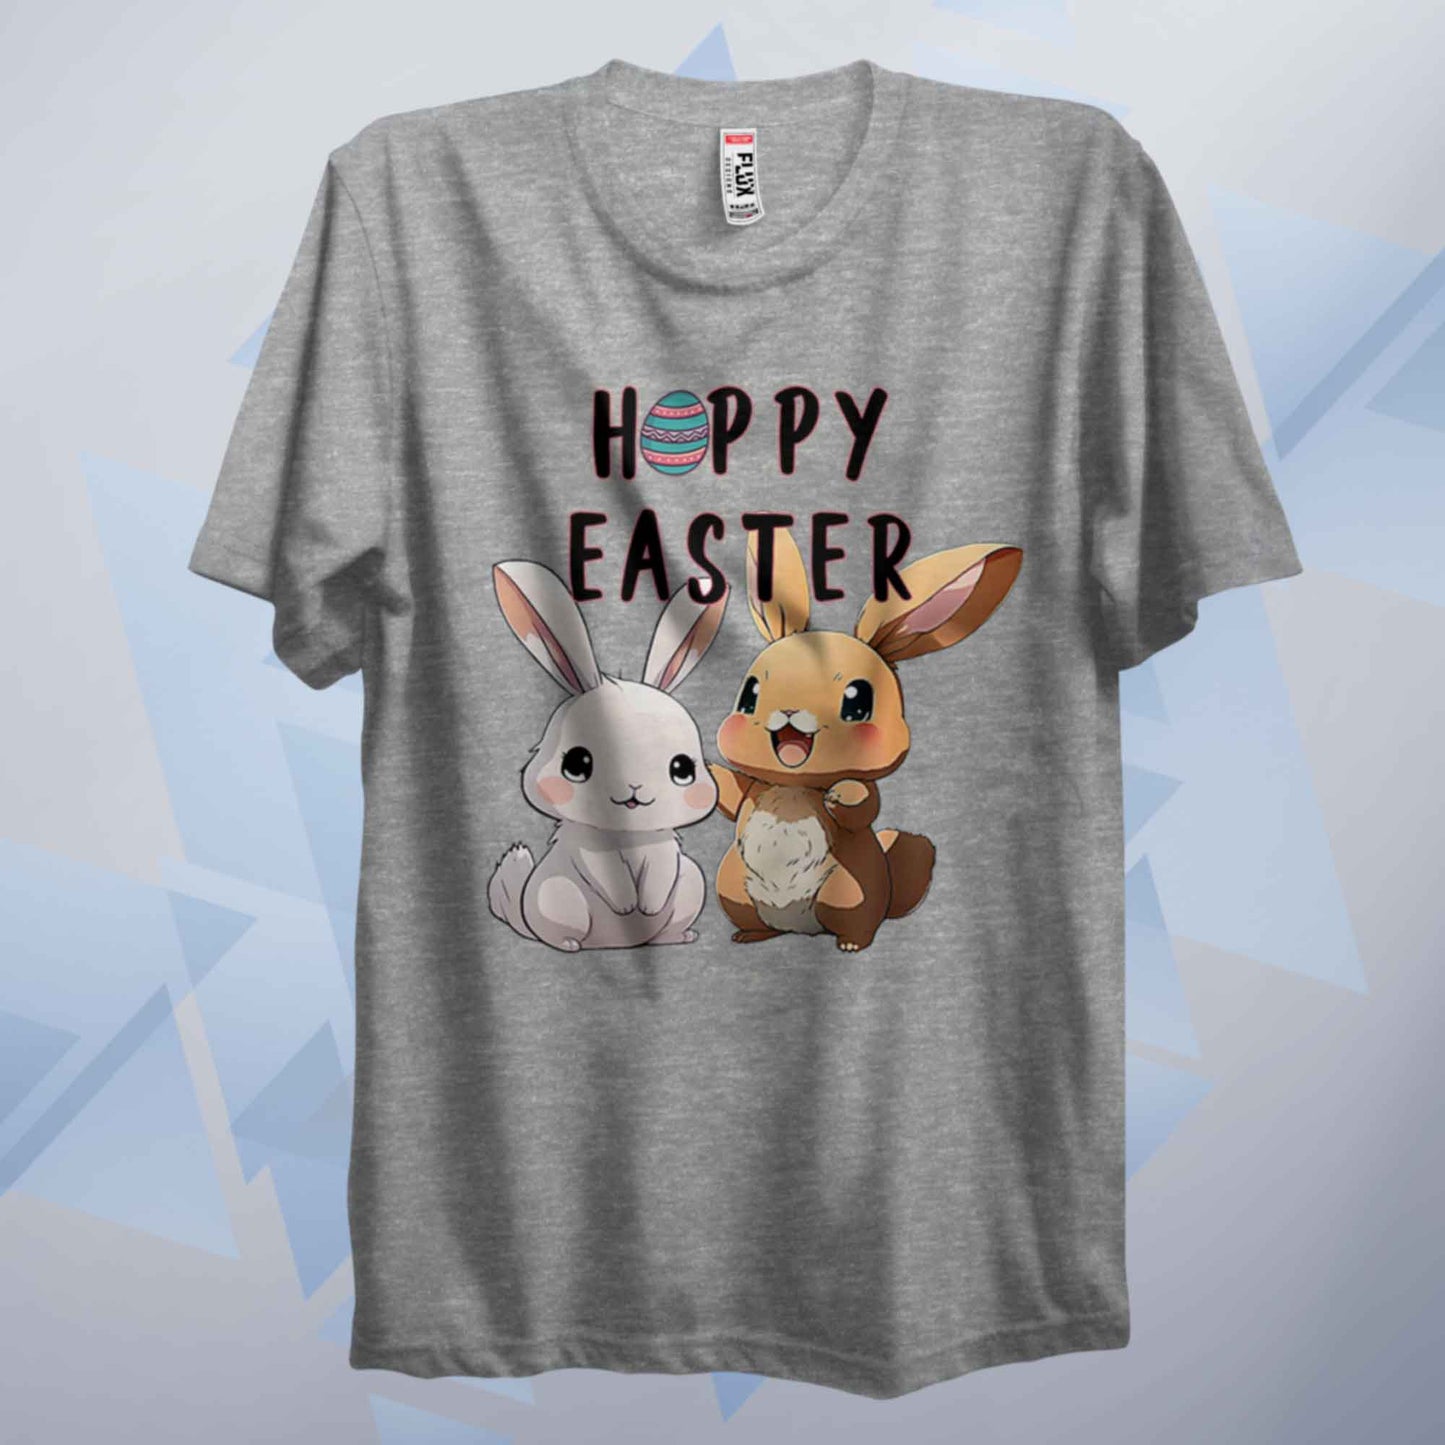 Hoppy Easter T Shirt